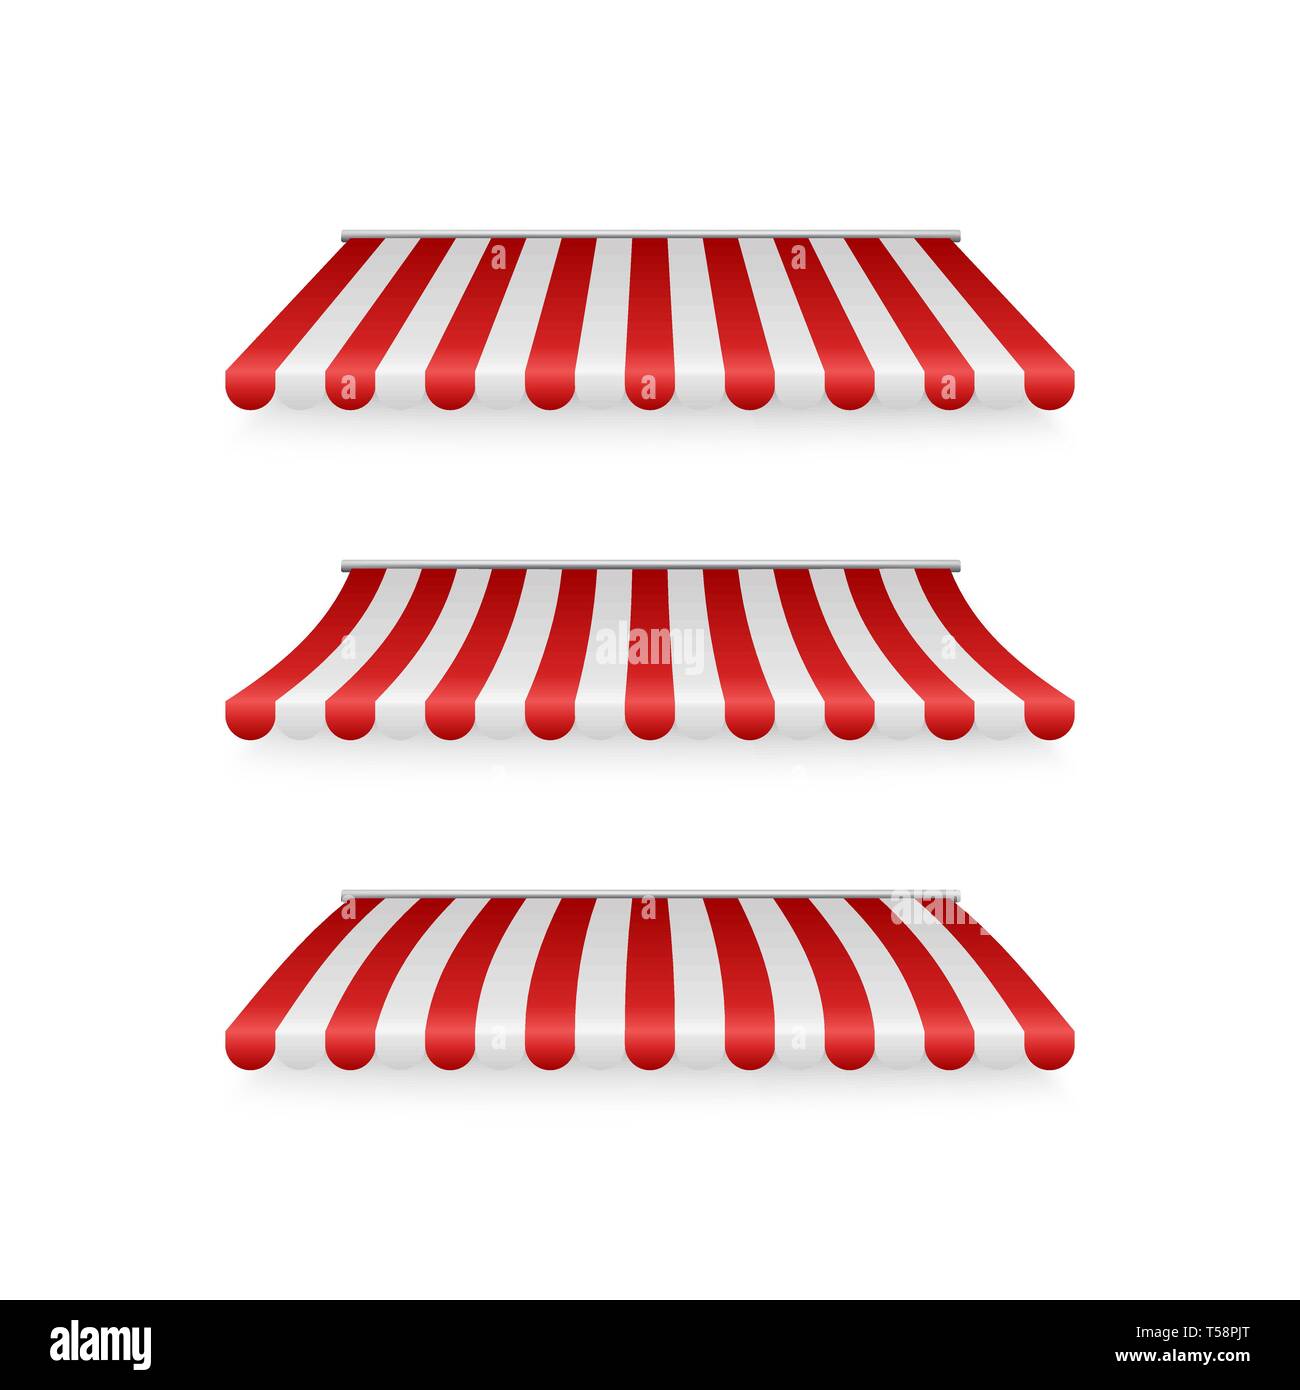 Série réaliste de rouge et blanc à rayures d'auvents. Des tentes ou des toits pour textile magasin de détail. Vector illustration isolé sur fond blanc Illustration de Vecteur